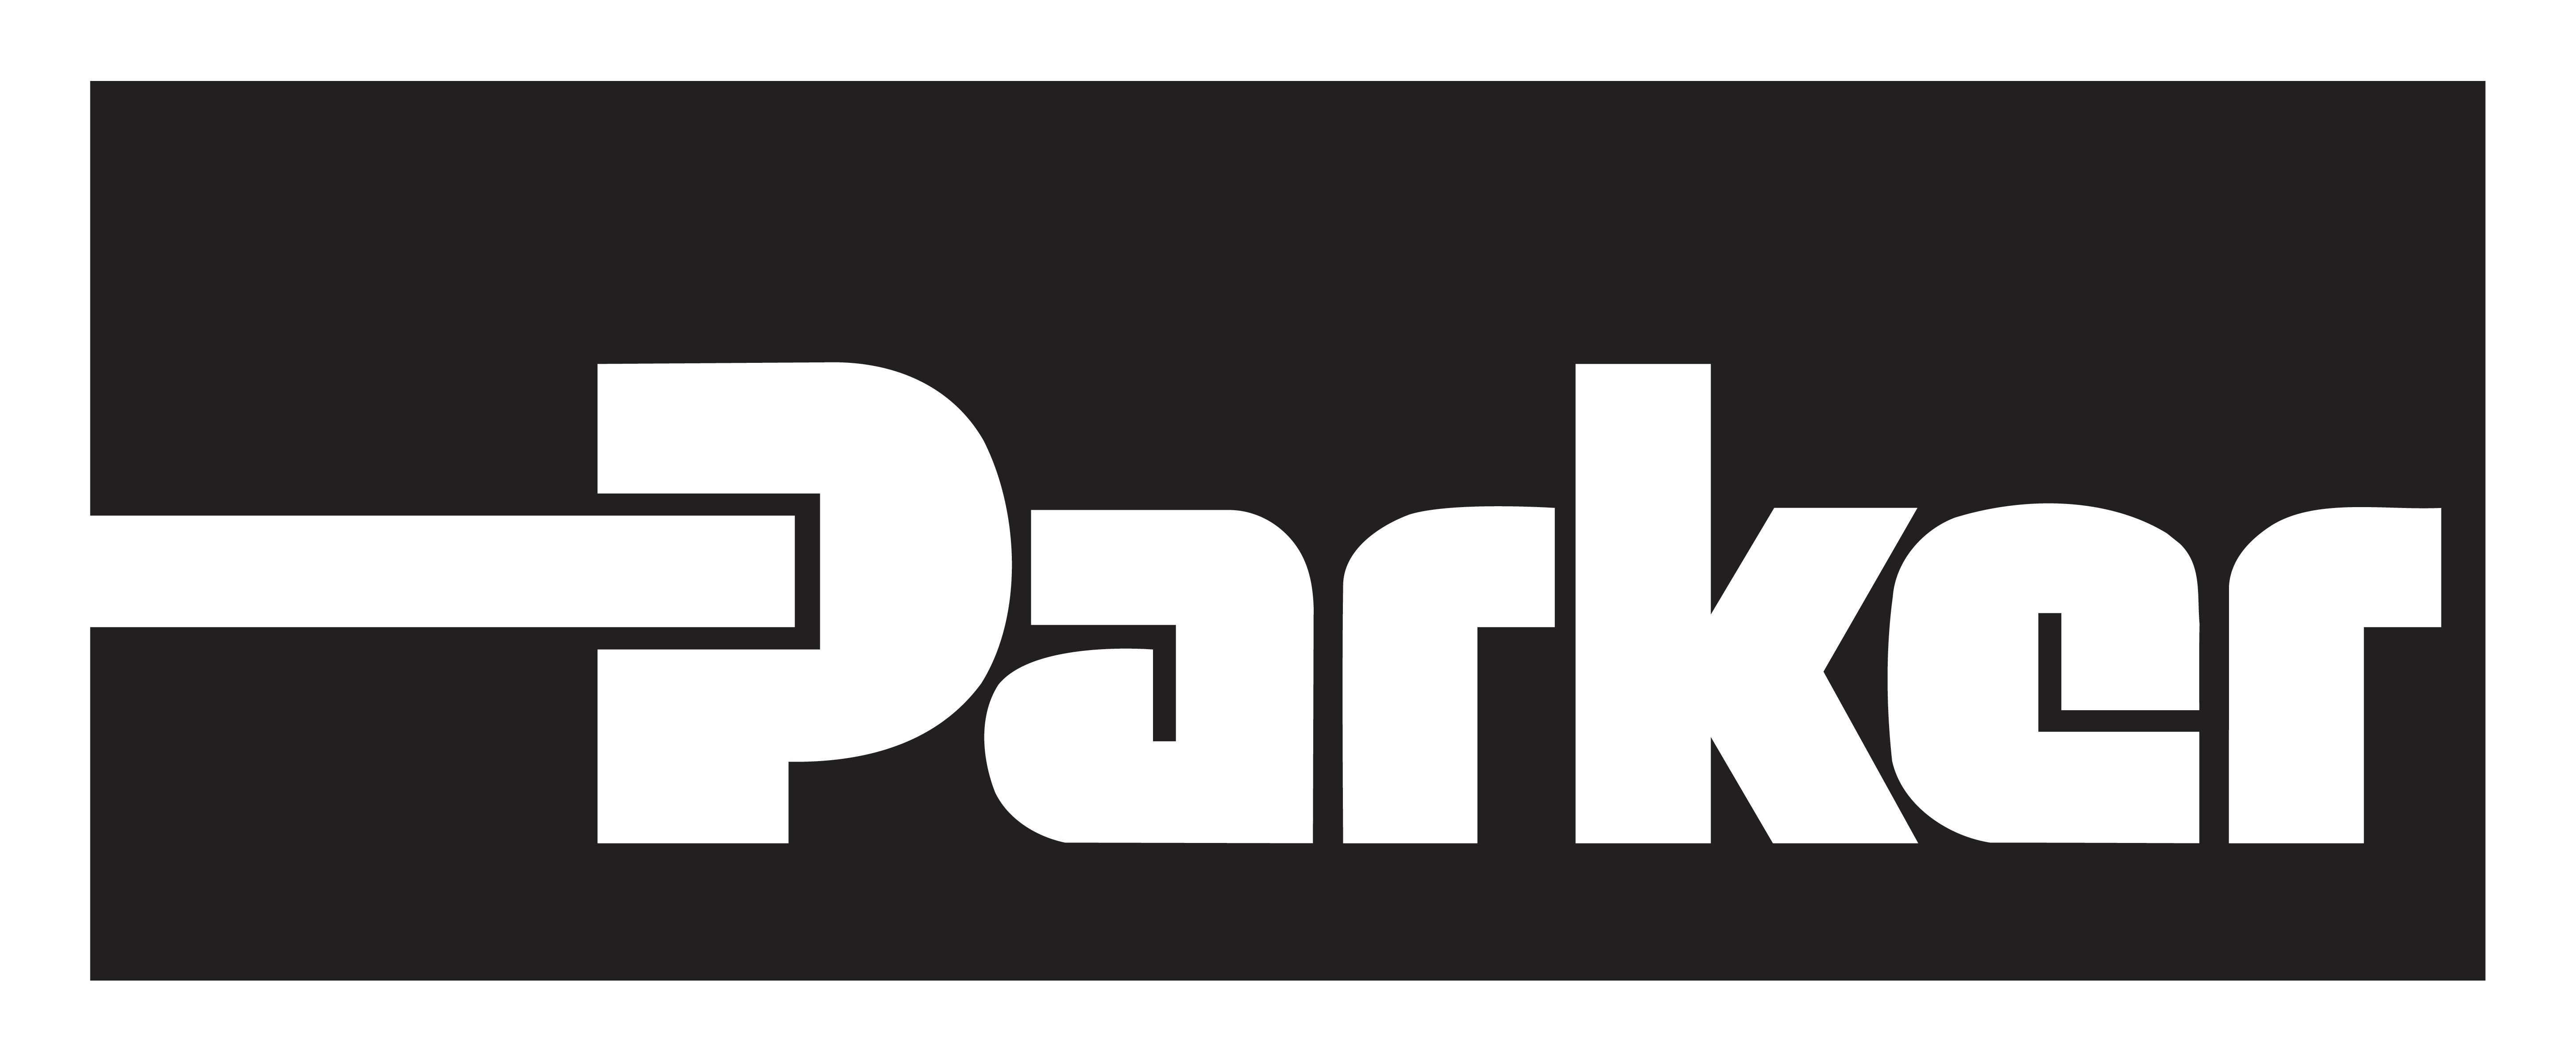 پارکر - واترجت و تجهیزات رسوب زدایی -PARKER  Hydraulics, Pneumatics and Filtration Manufacturer